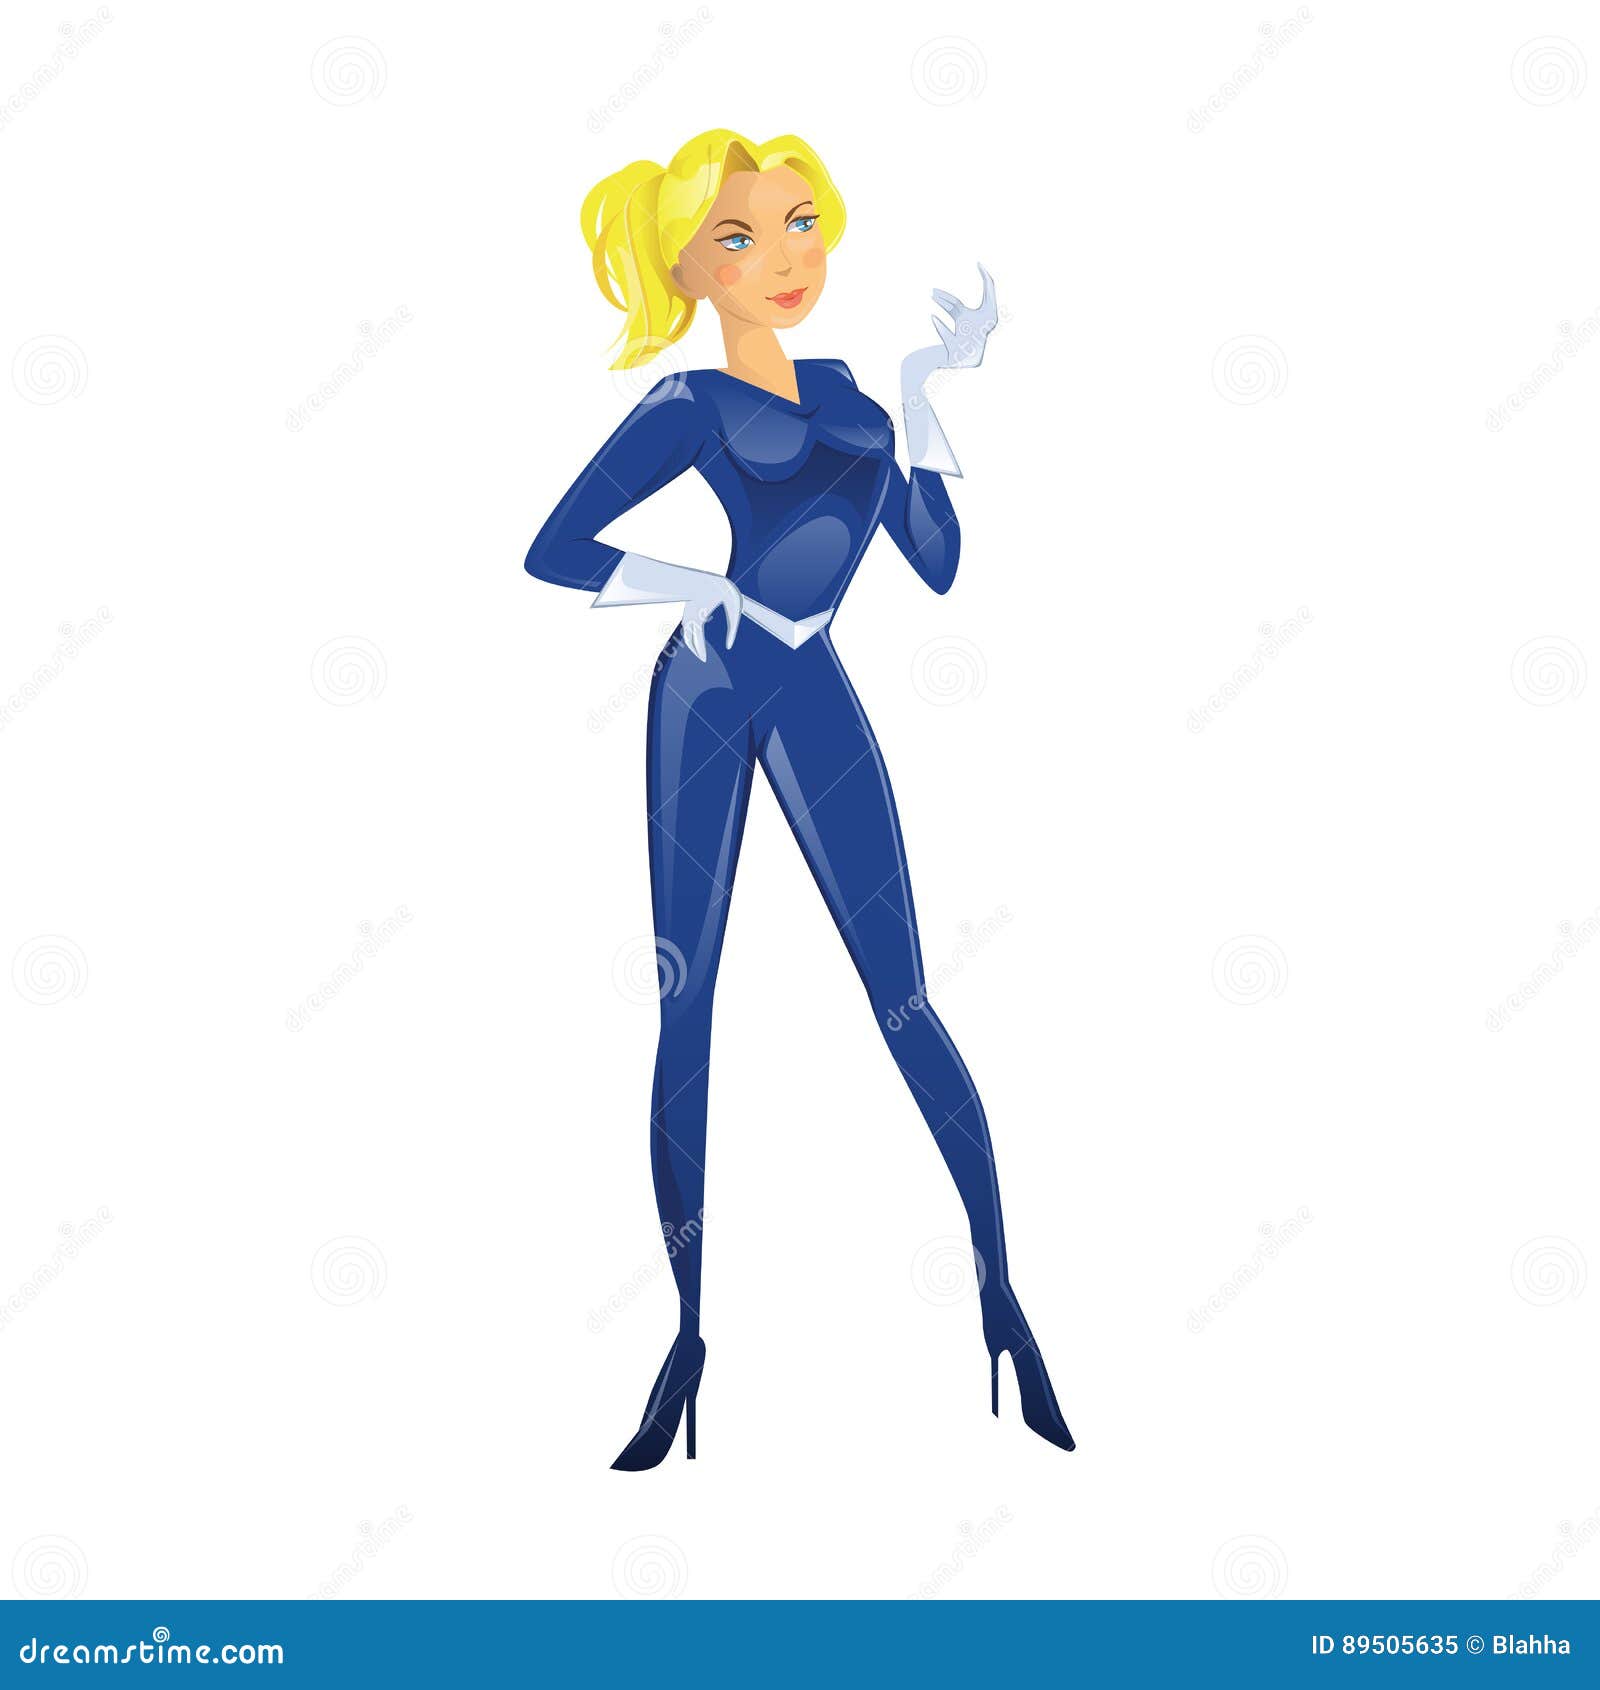 Superhero woman stock illustration. Illustration of heroic - 89505635